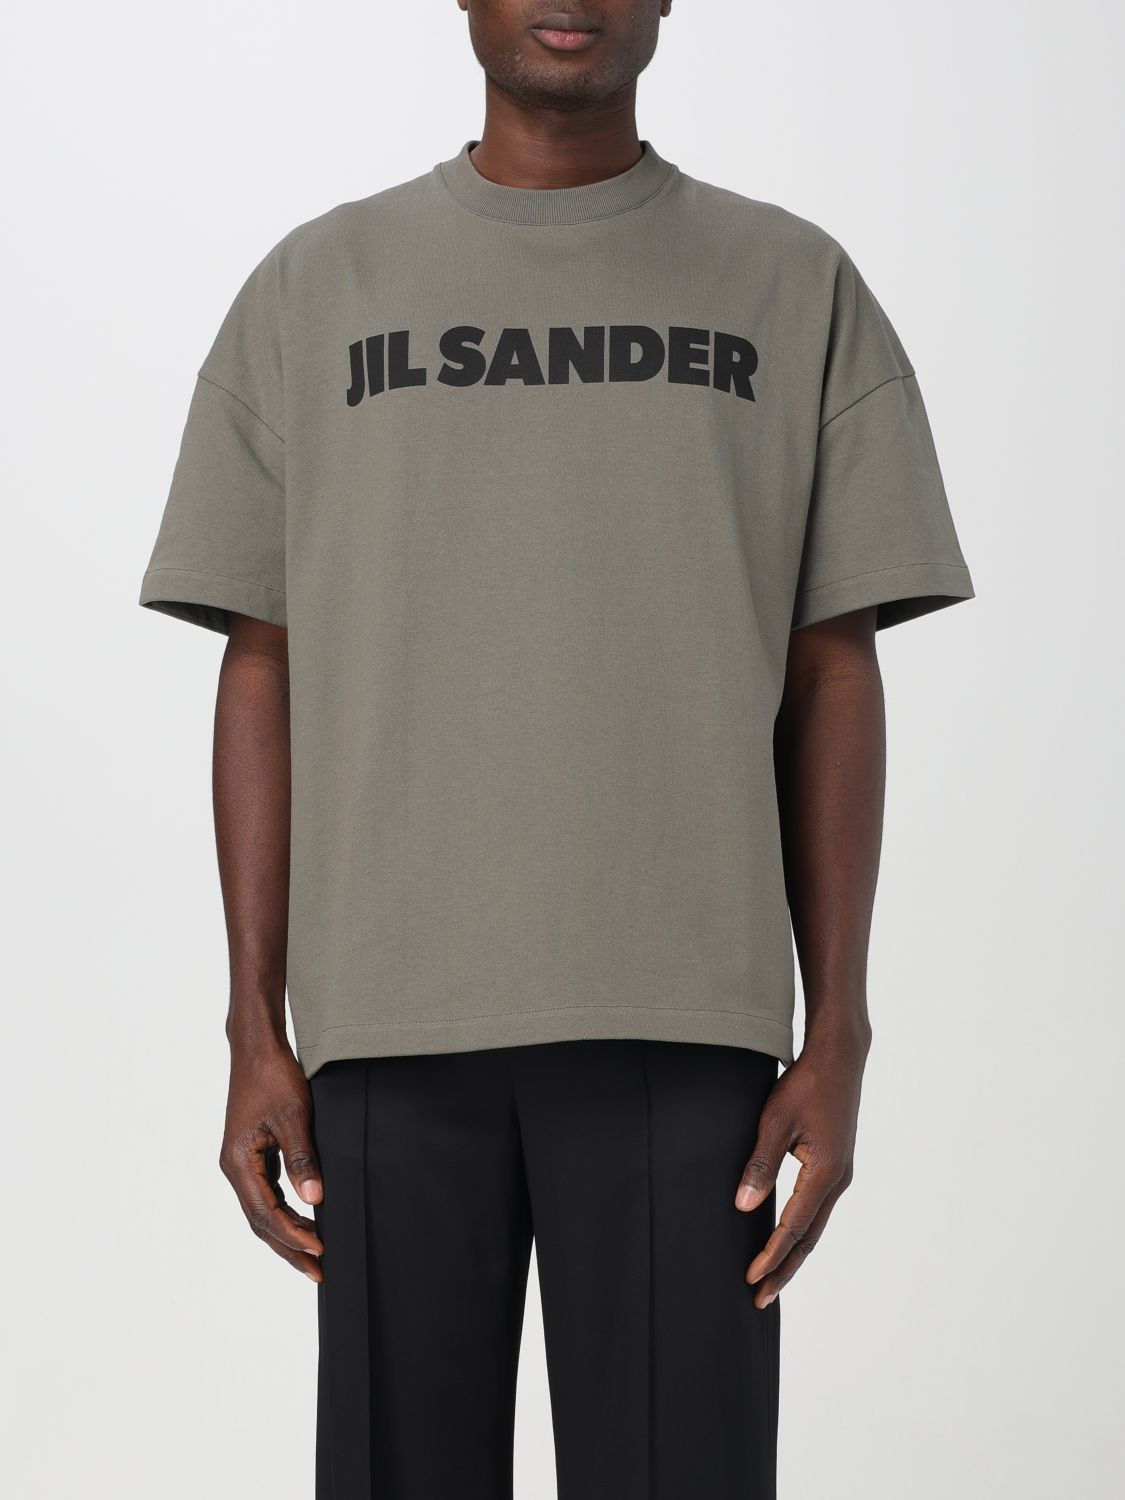 JIL SANDER T恤 JIL SANDER 男士 颜色 绿色,F24650012